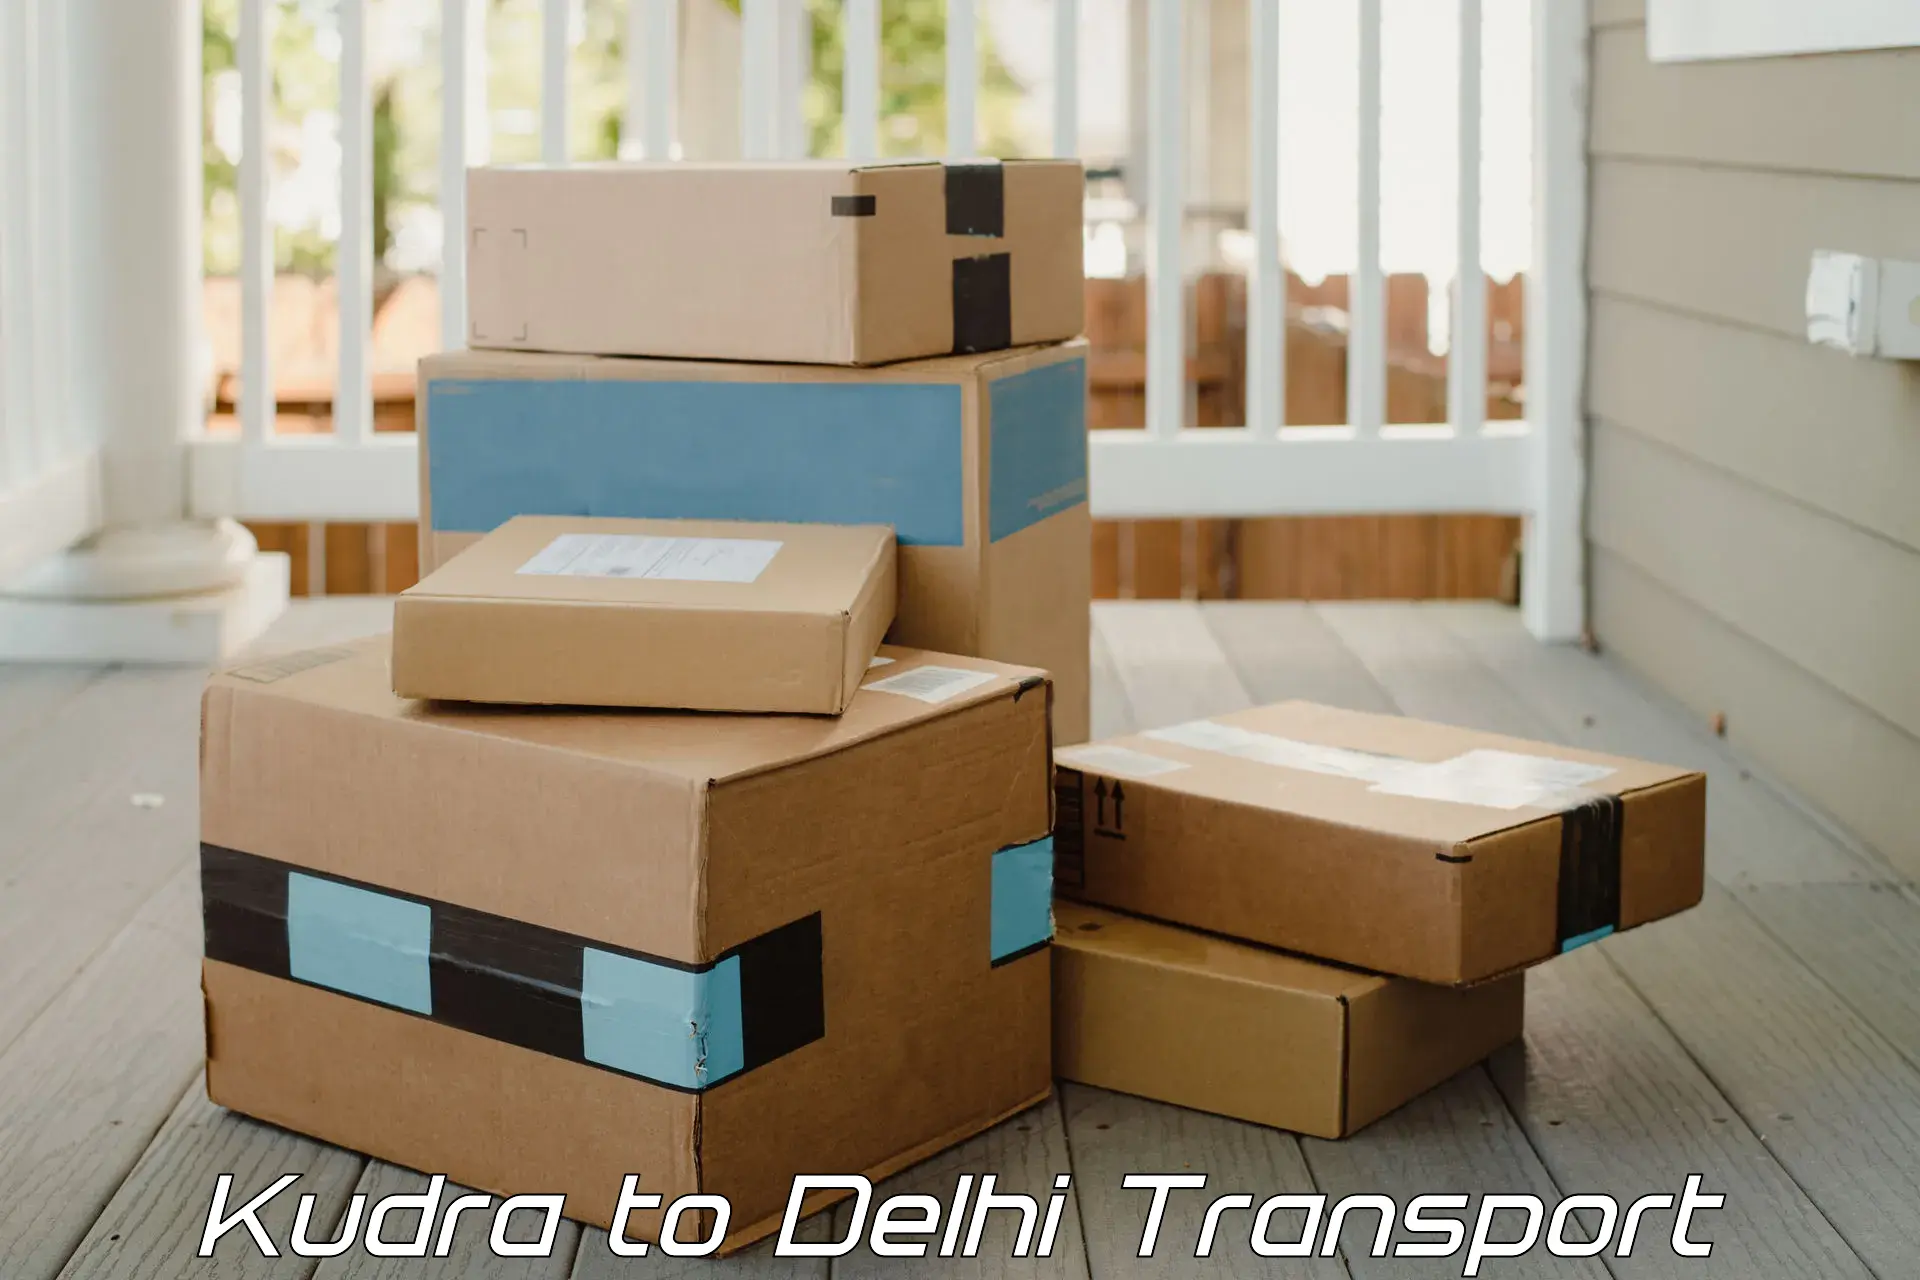 Online transport Kudra to Guru Gobind Singh Indraprastha University New Delhi